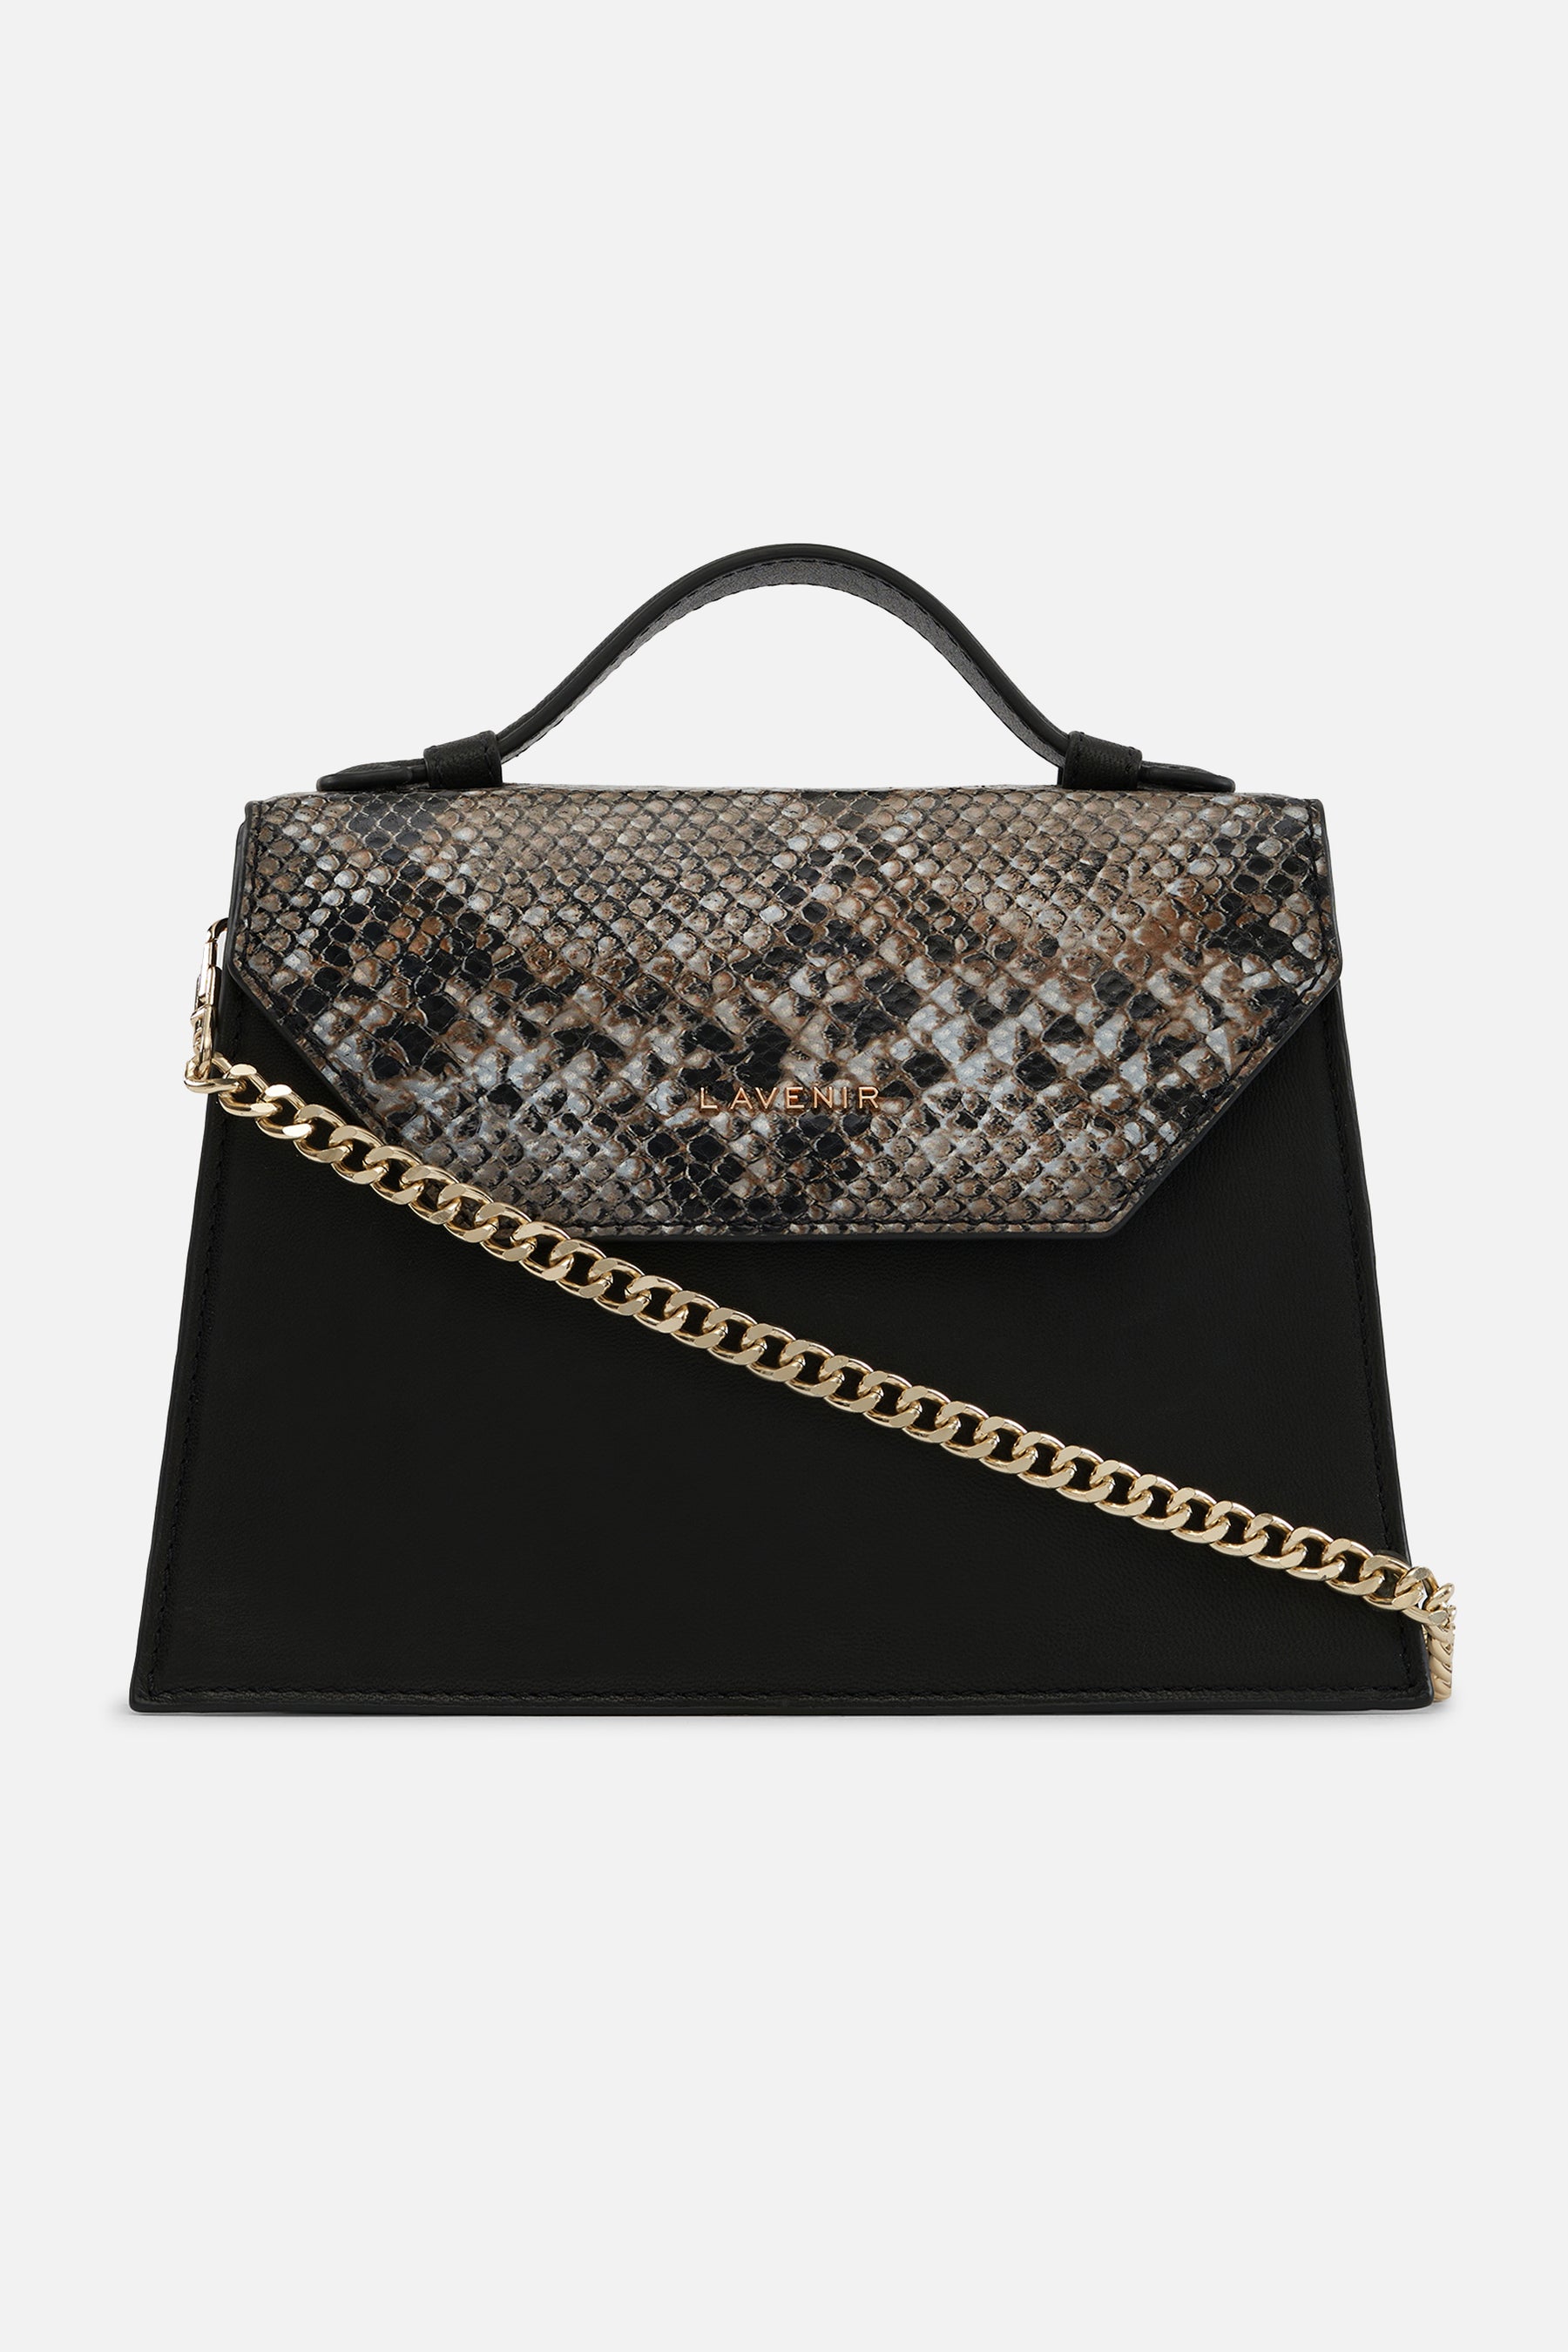 Miami - Pearl Handle Bag - Black With Python Print